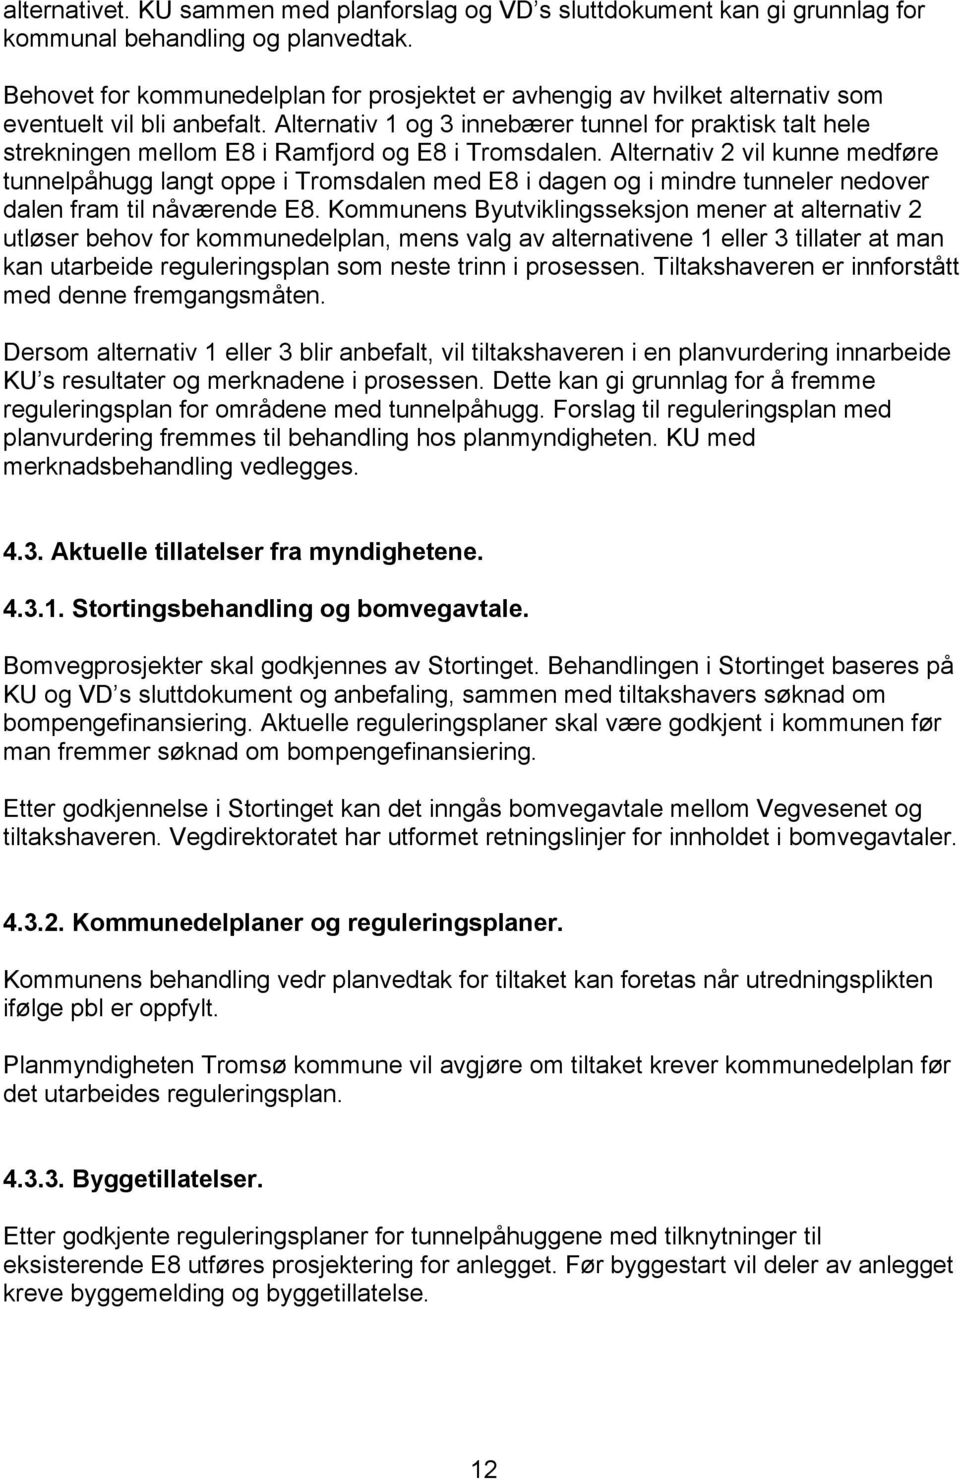 Alternativ 1 og 3 innebærer tunnel for praktisk talt hele strekningen mellom E8 i Ramfjord og E8 i Tromsdalen.